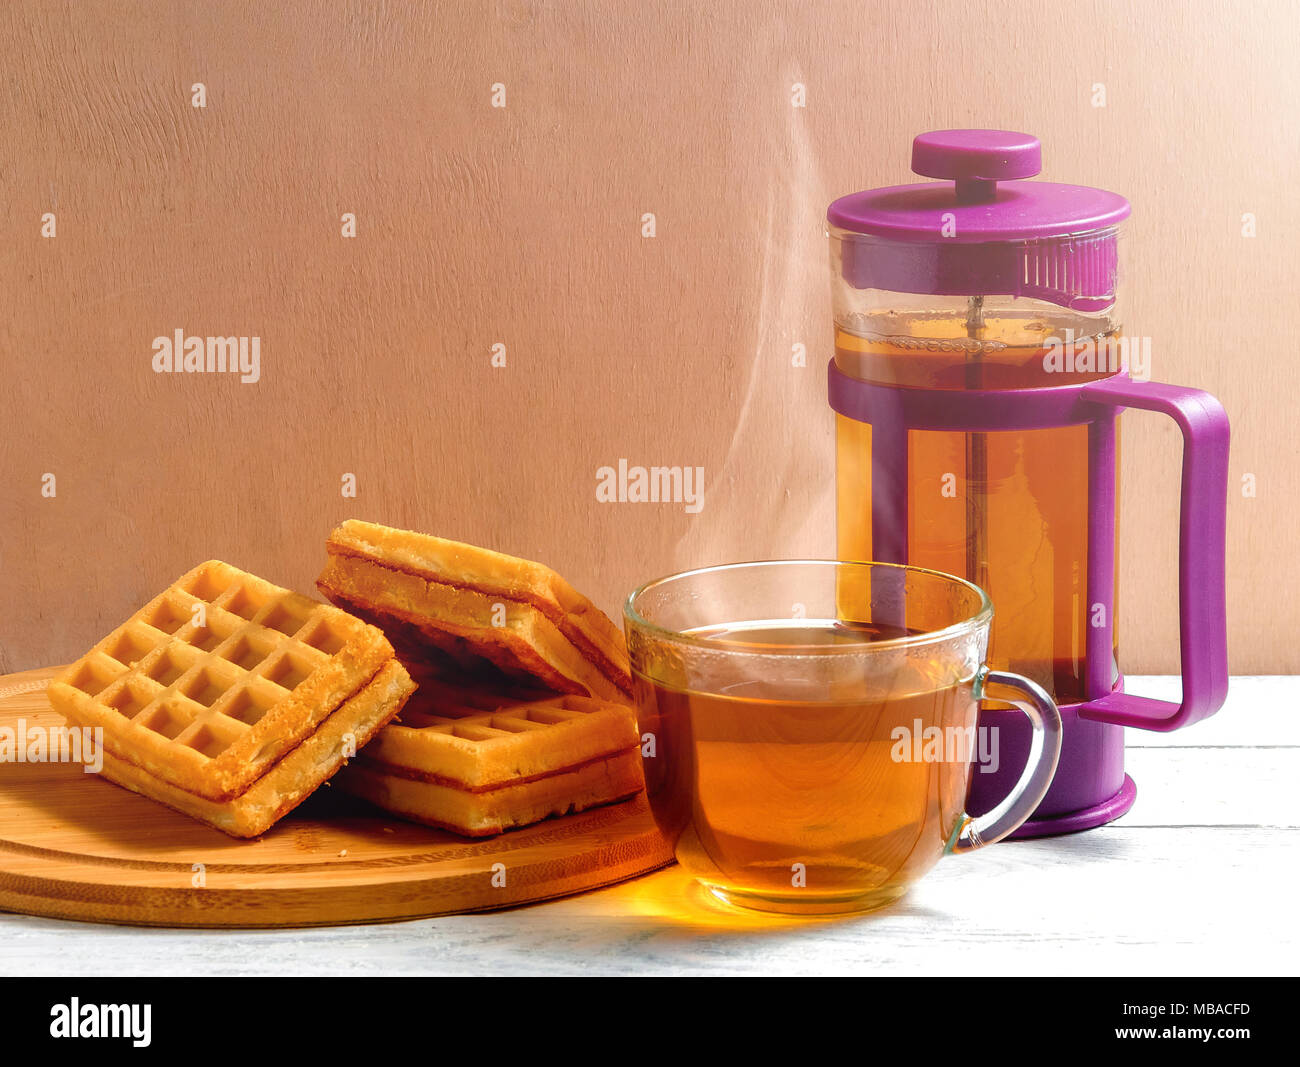 Waffles fatti in casa con la marmellata sul vecchio tavolo in legno. Wafers con tazza di tè e teiera. Foto Stock